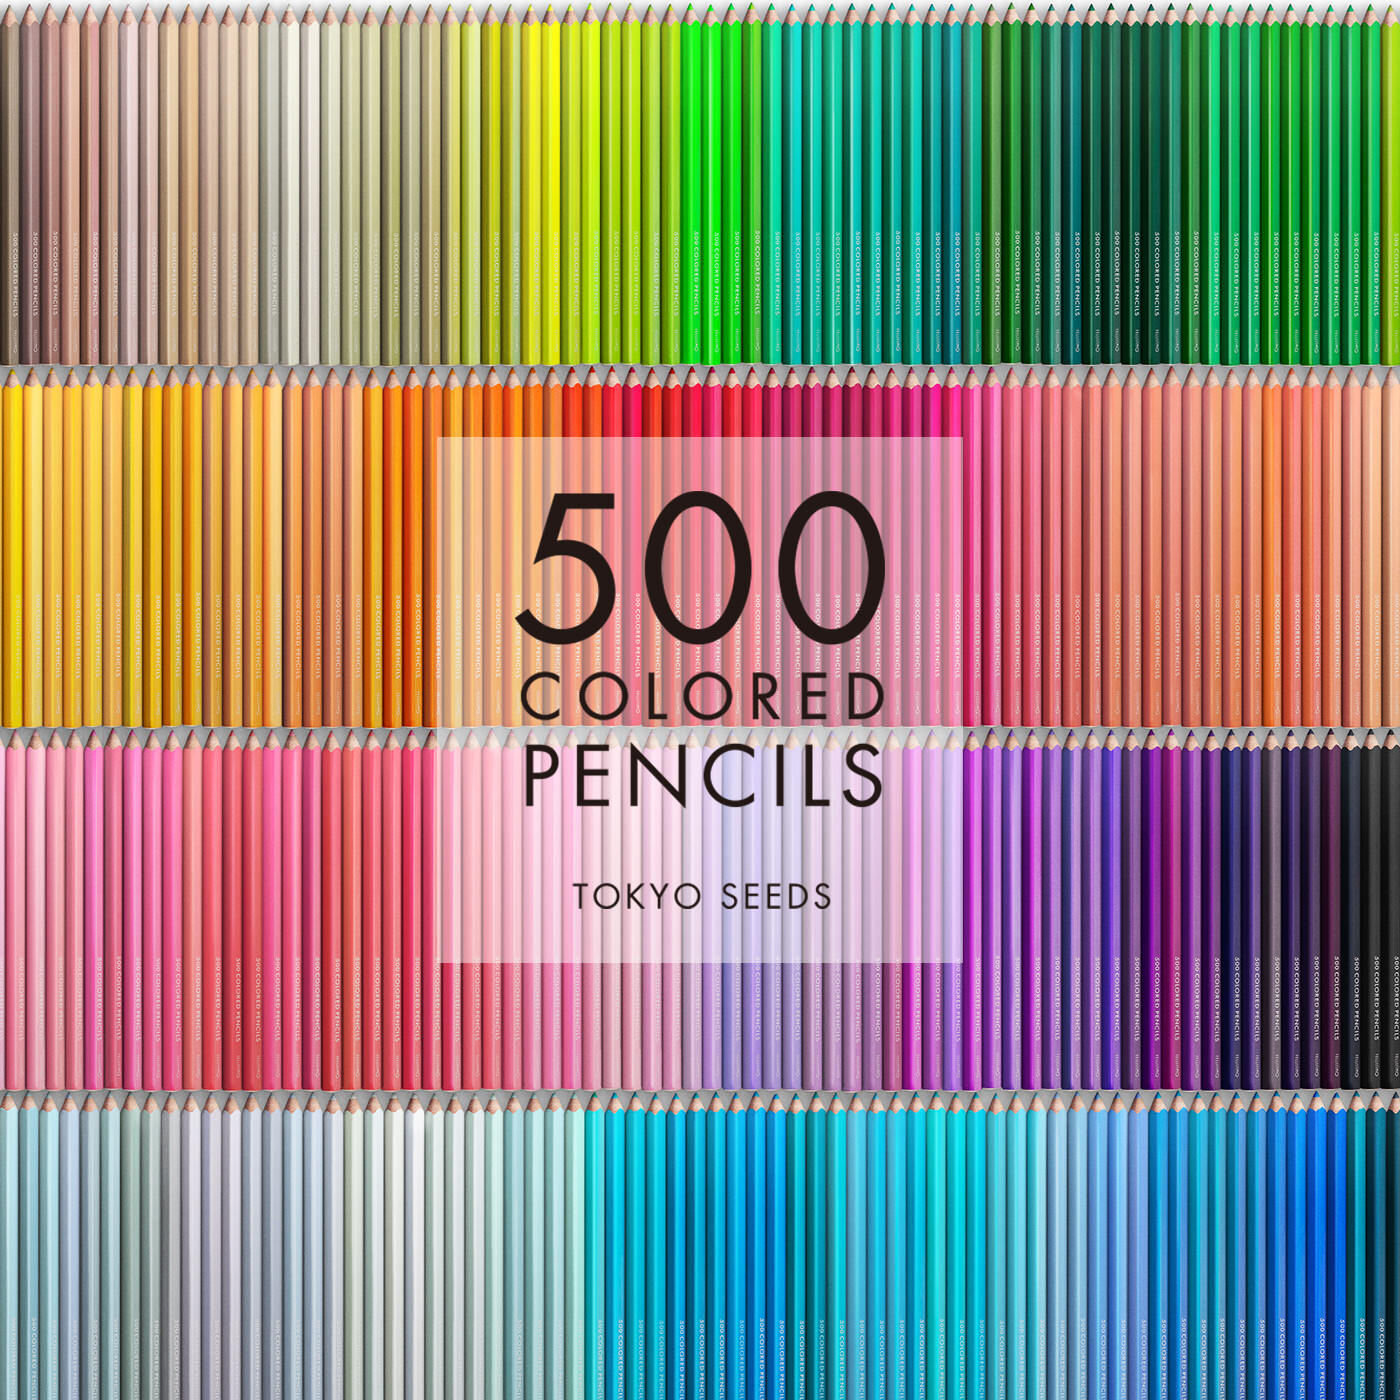 Real Stock|【198/500 COOKIE DOUGH】500色の色えんぴつ TOKYO SEEDS|1992年、世界初の「500色」という膨大な色数の色えんぴつが誕生して以来、その販売数は発売当初から合わせると、世界55ヵ国10万セット以上。今回、メイド・イン・ジャパンにこだわり、すべてが新しく生まれ変わって登場しました。